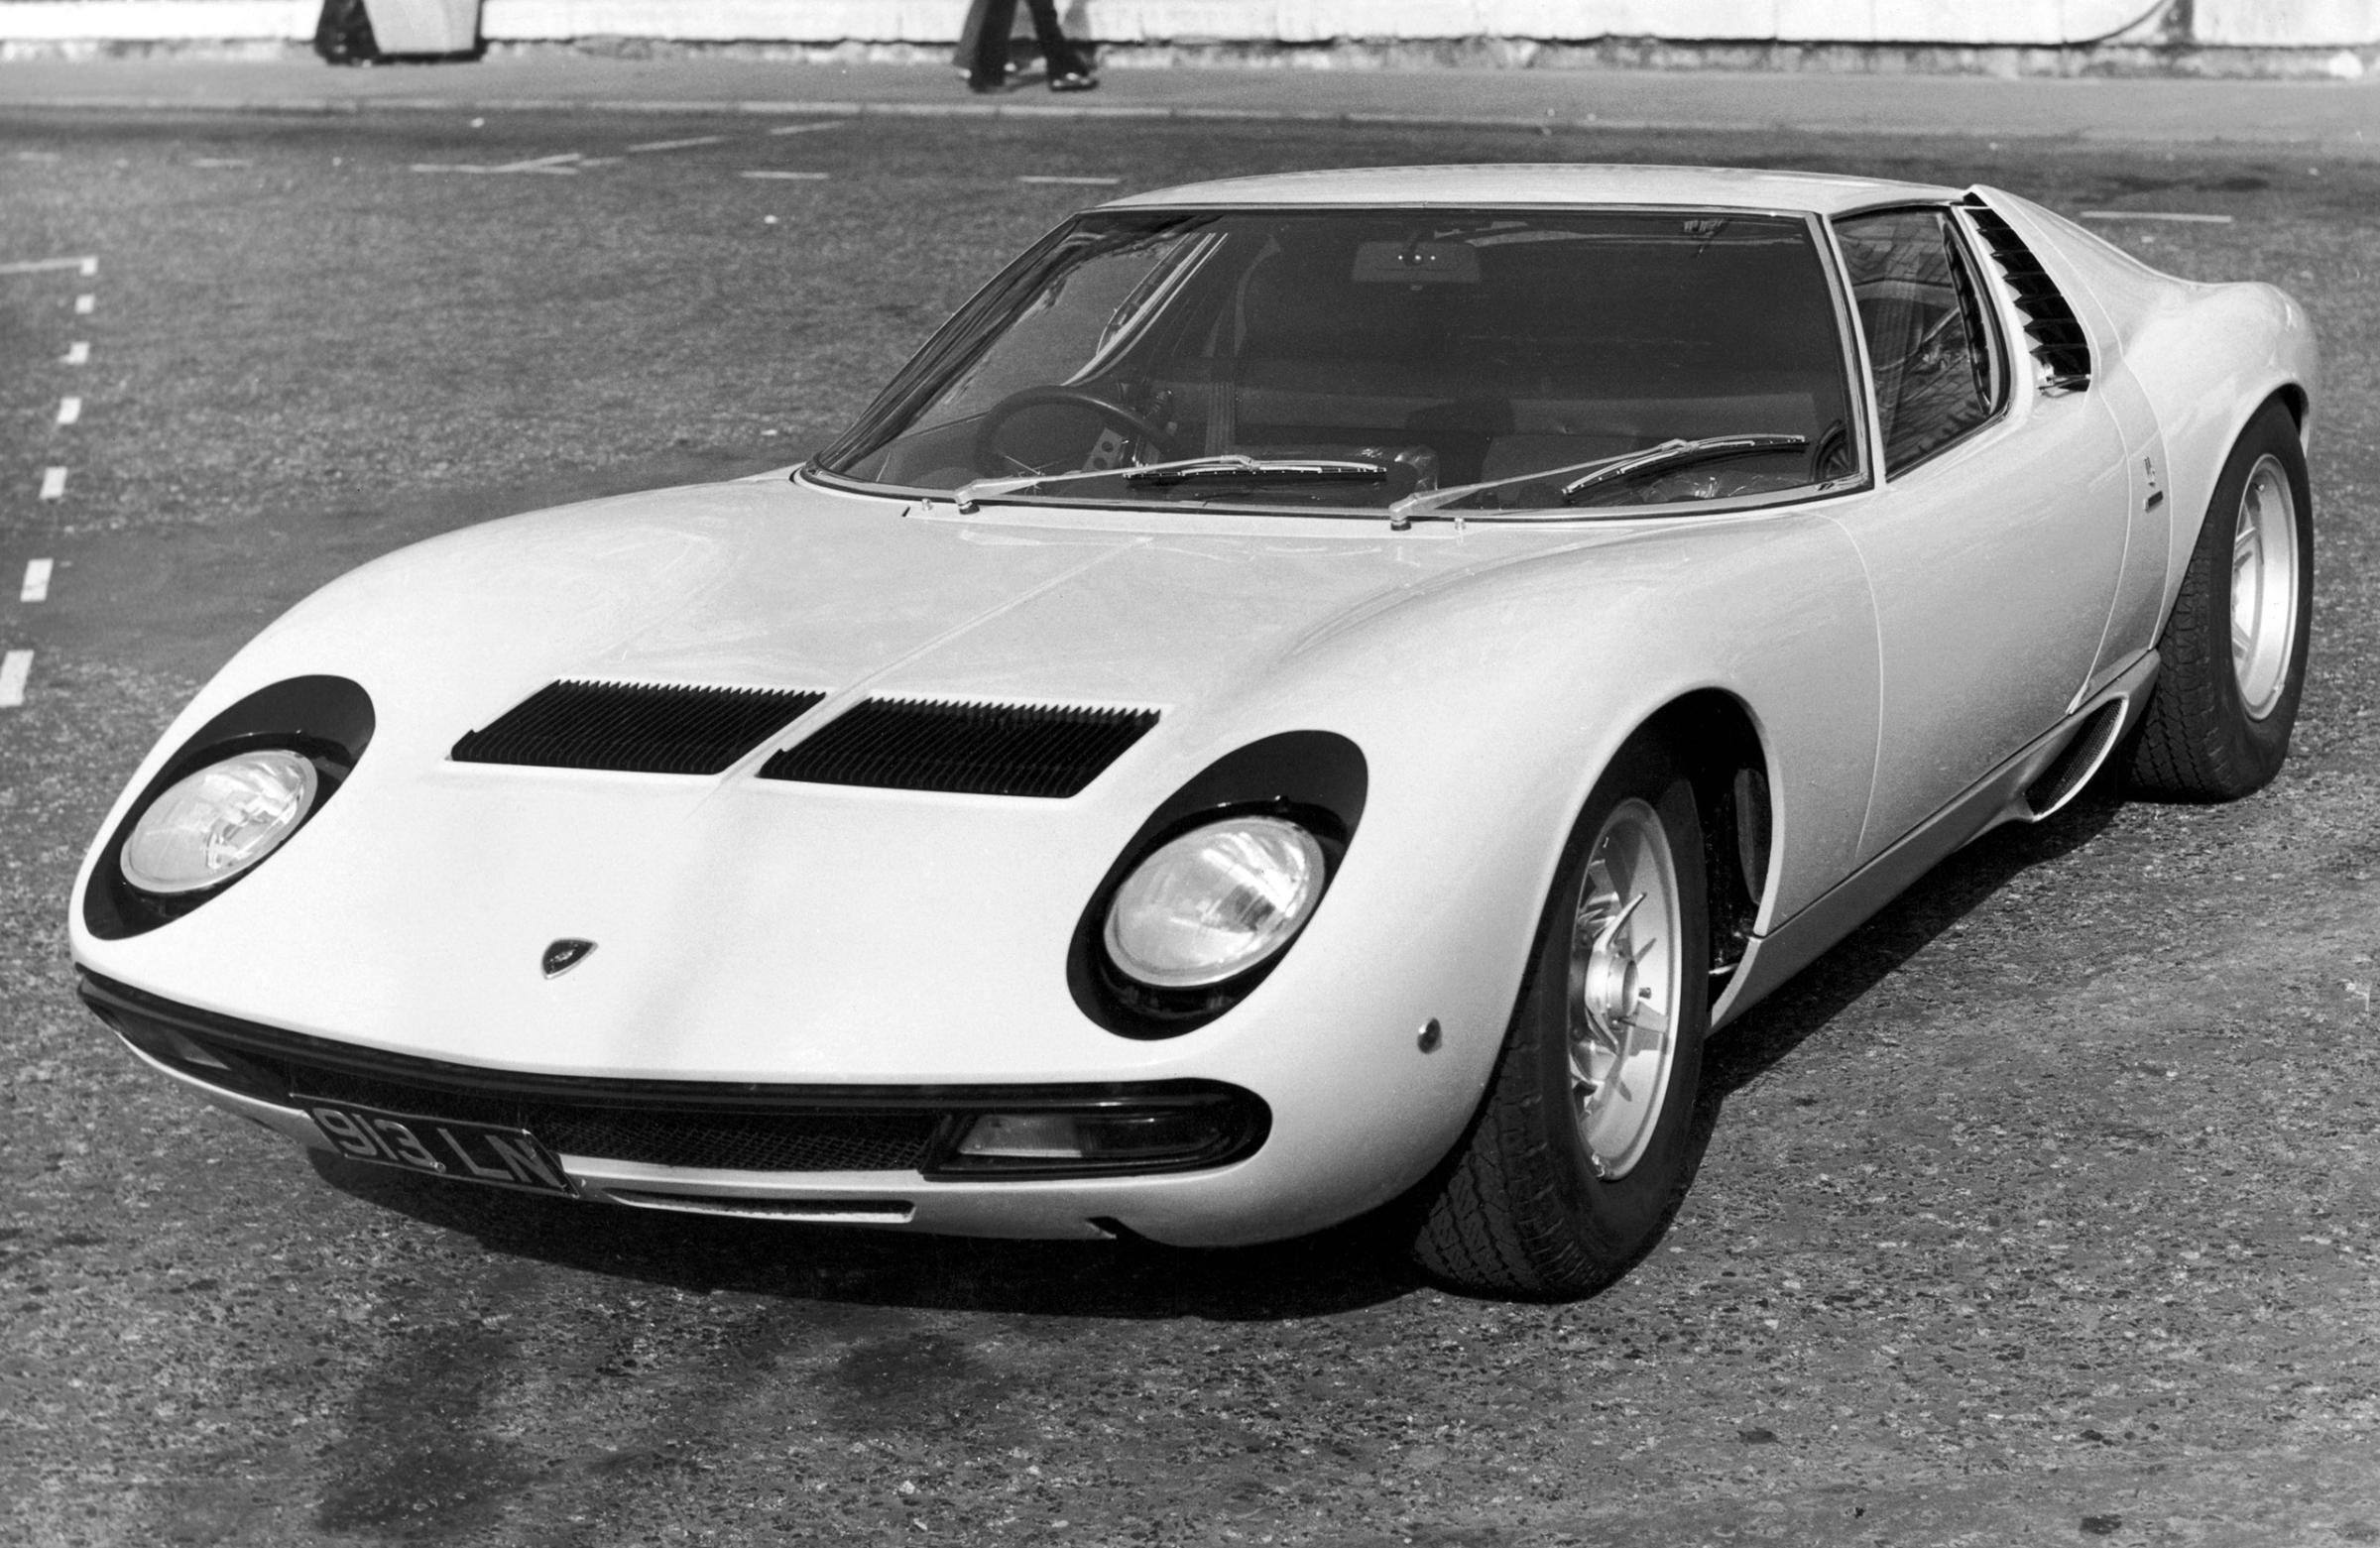 A Lamborghini Miura P400 sports car, circa 1967. The car was designed by Marcello Gandini of the Bertone design studio, and launched in 1966.